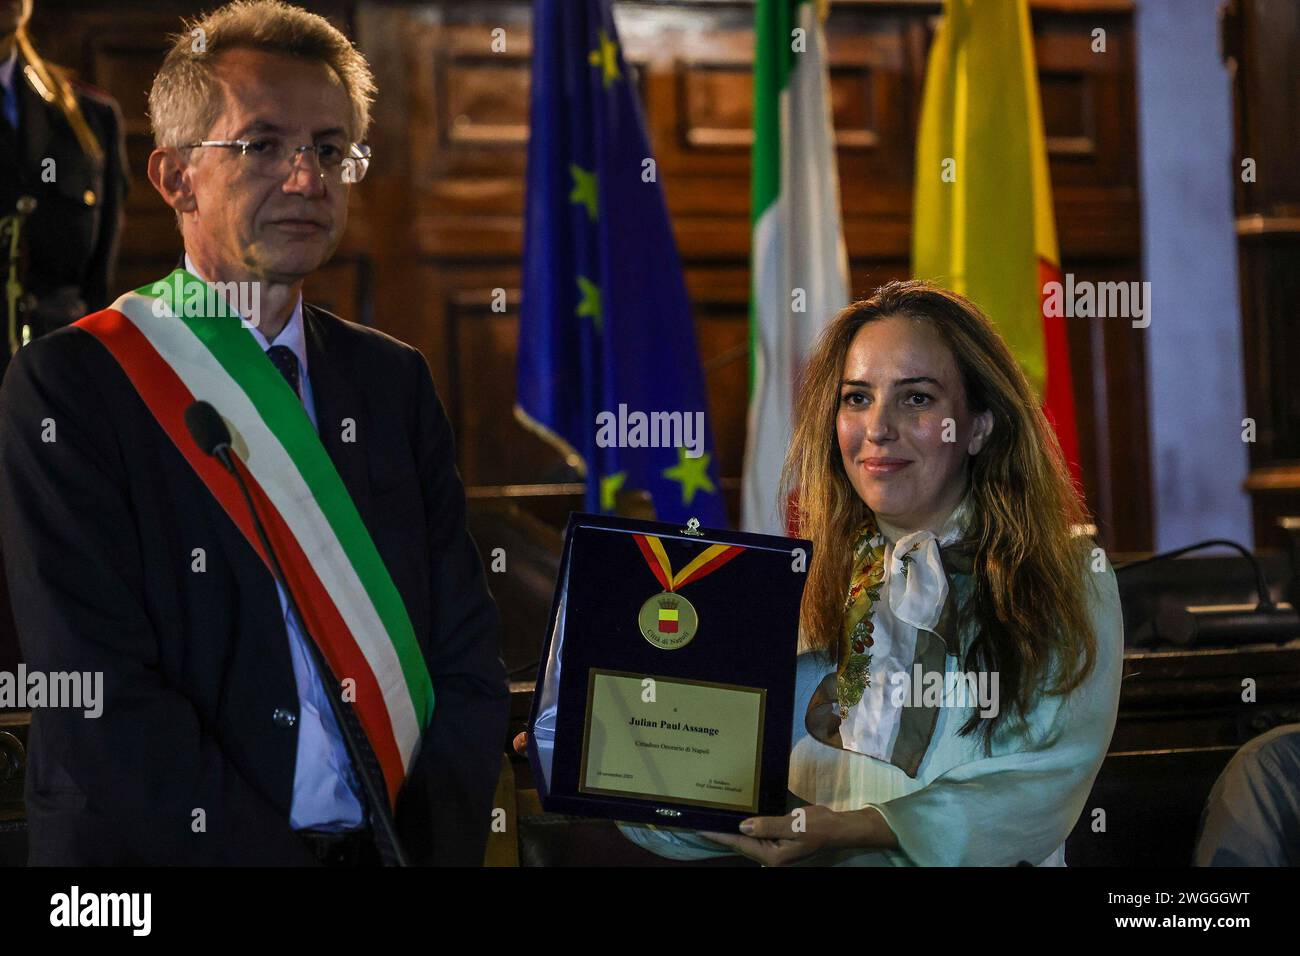 Der Bürgermeister von Neapel Gaetano Manfredi überreicht Stella Moris die Gedenktafel zur Verleihung der Ehrenbürgerschaft von Neapel an Julian Assange. Stockfoto